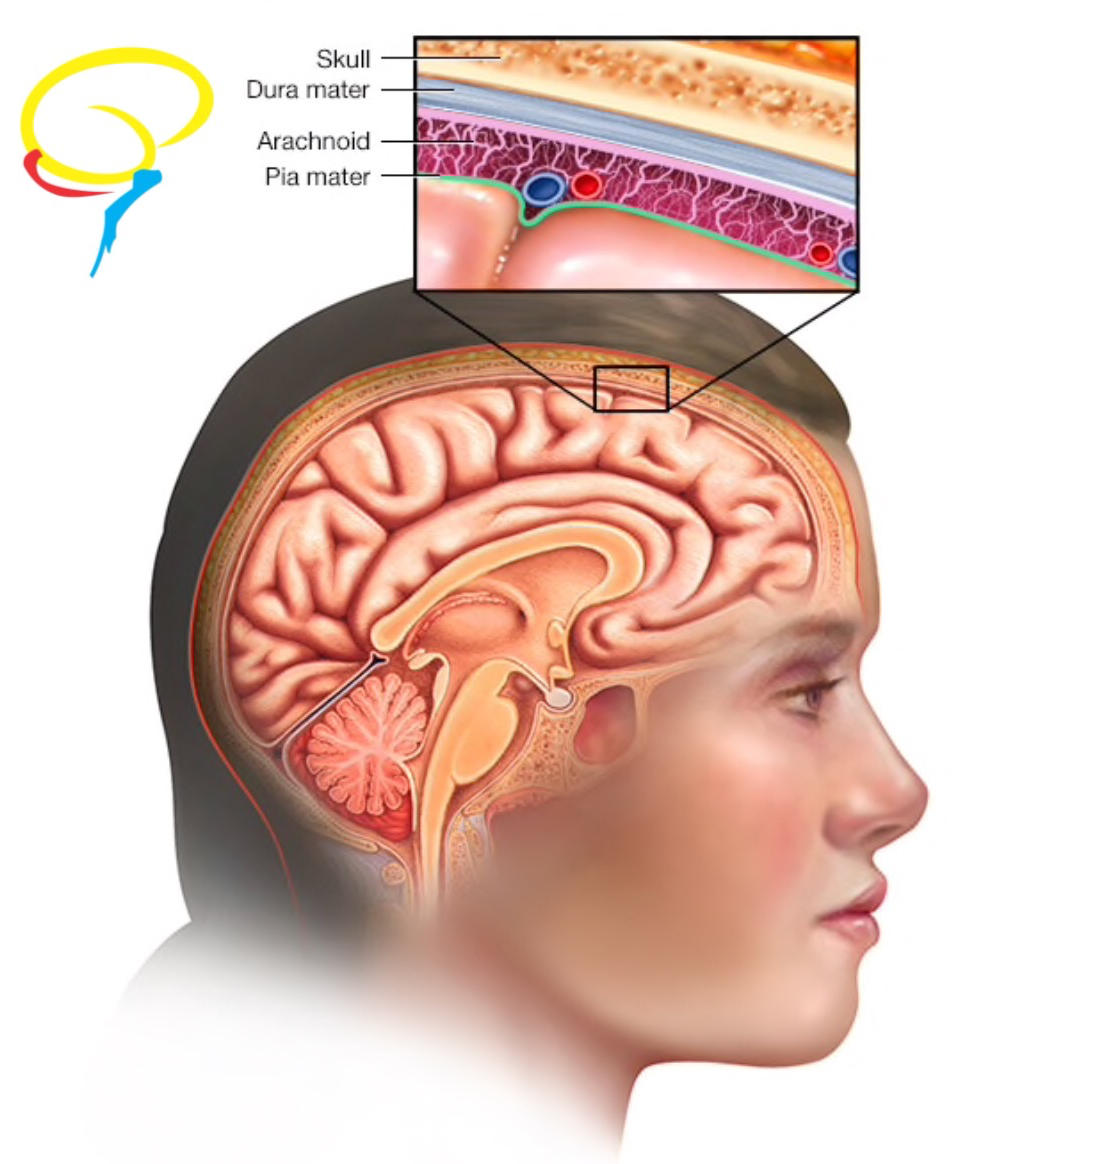 Figura 2: Meninges cerebrais, demonstrando a camada subaracnóide, de onde originam-se os meningiomas.